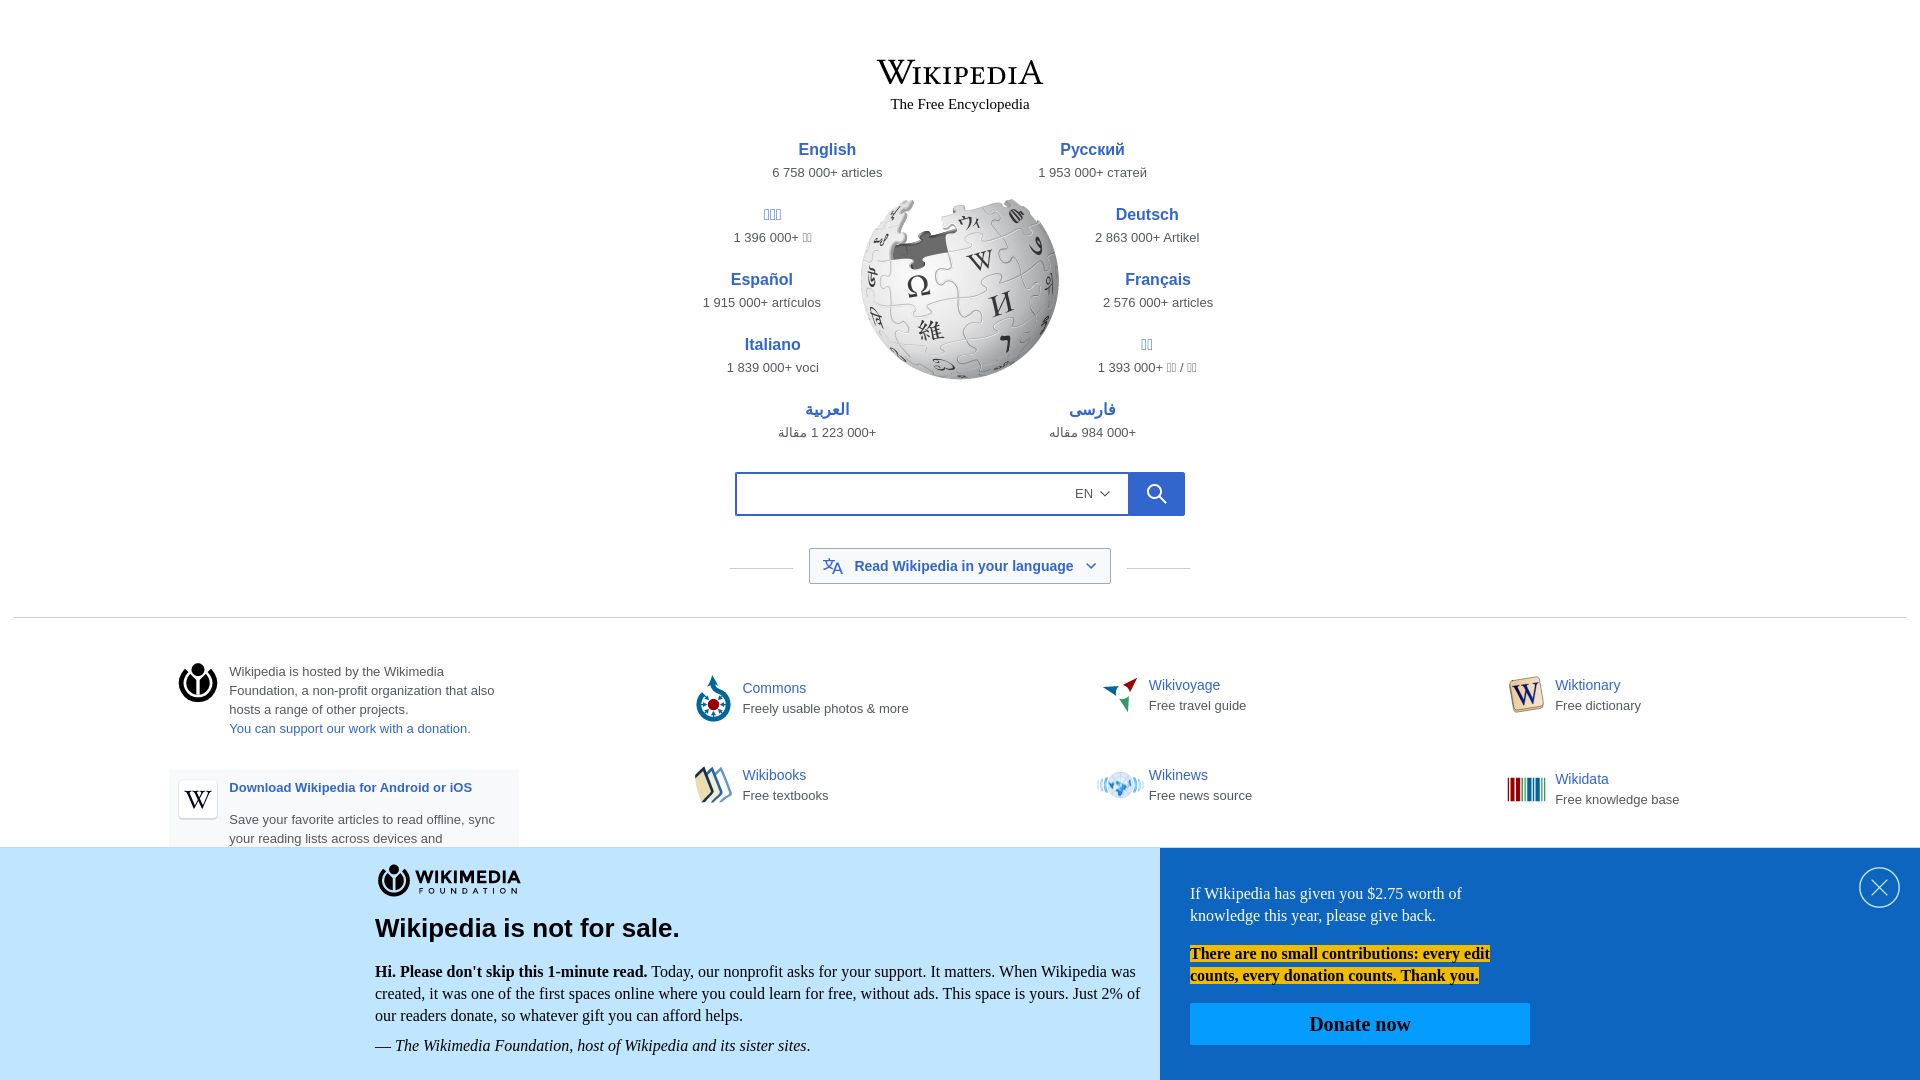 Stato del sito web wikipedia.org è   ONLINE